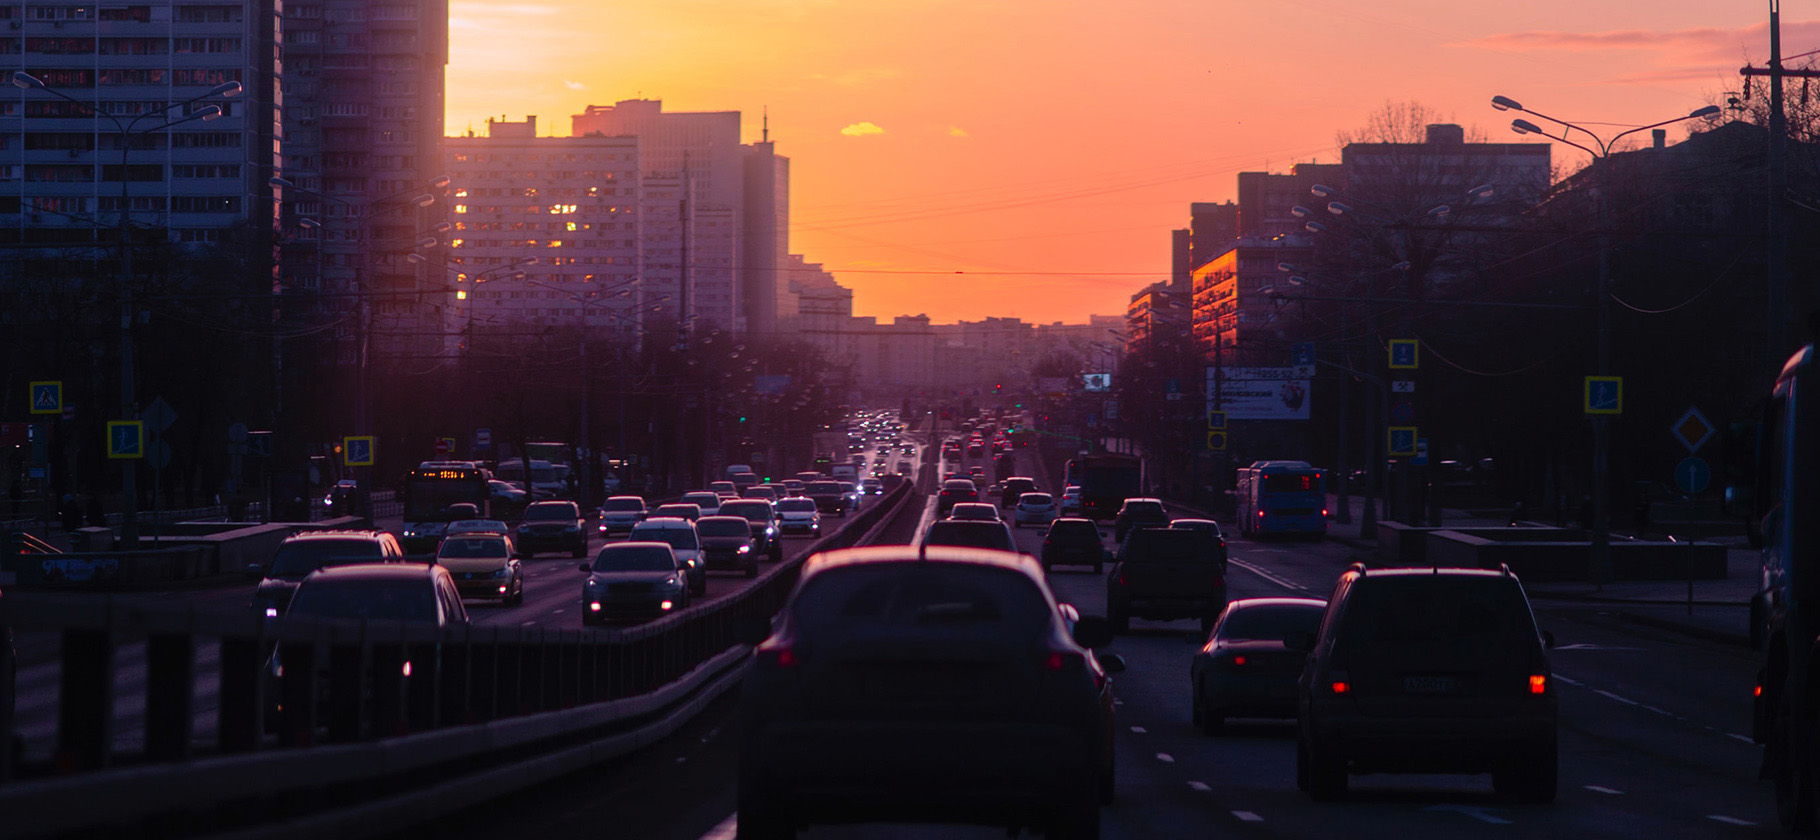 Пробки, реагенты и безумные цены: 8 вещей, которые раздражают в Москве